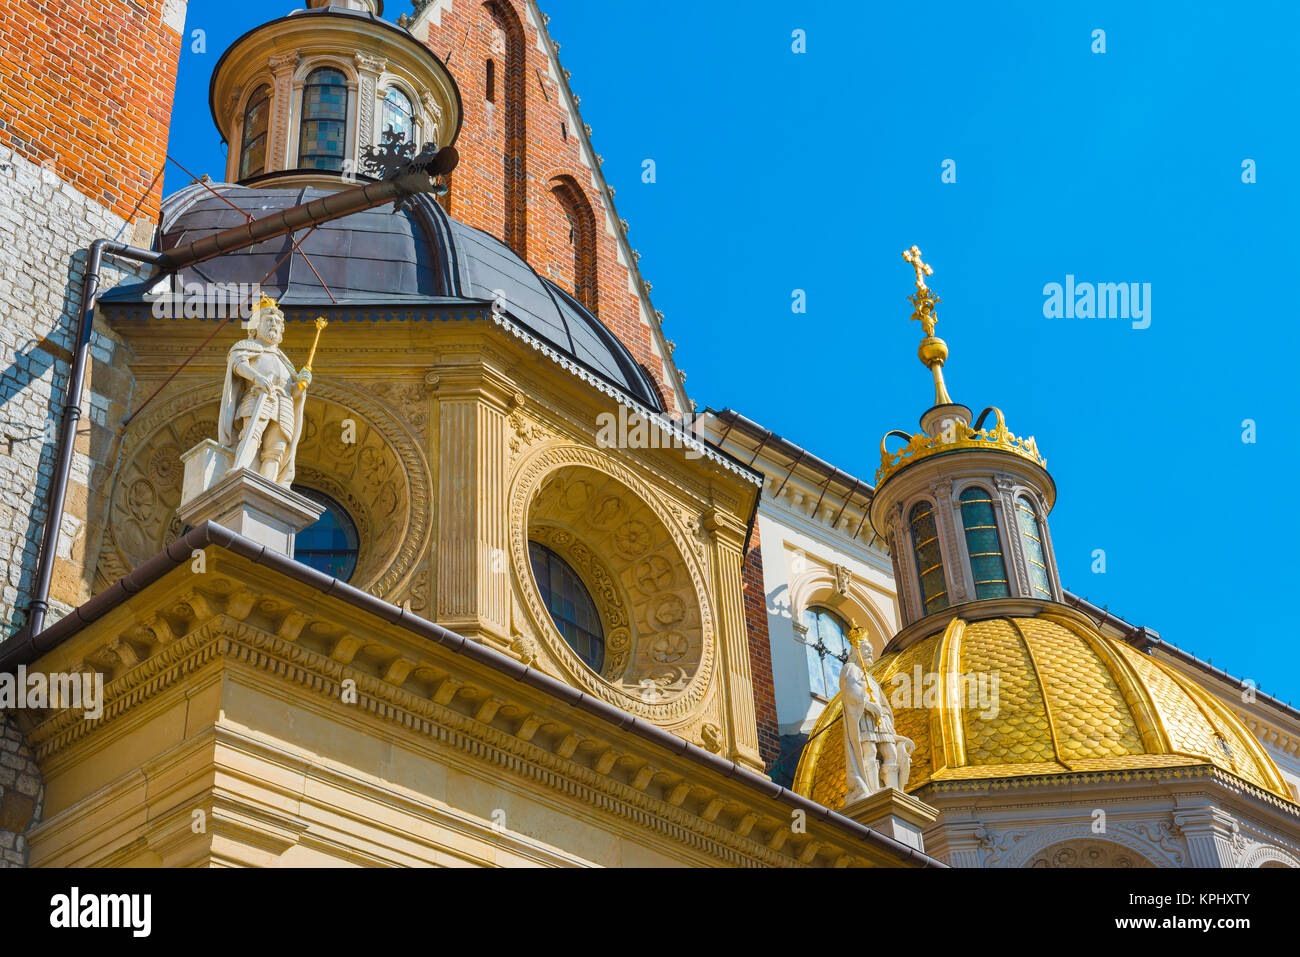 Polen mittelalterliche Architektur, Detail der Fassade der Kathedrale in Krakau, Polen. Stockfoto